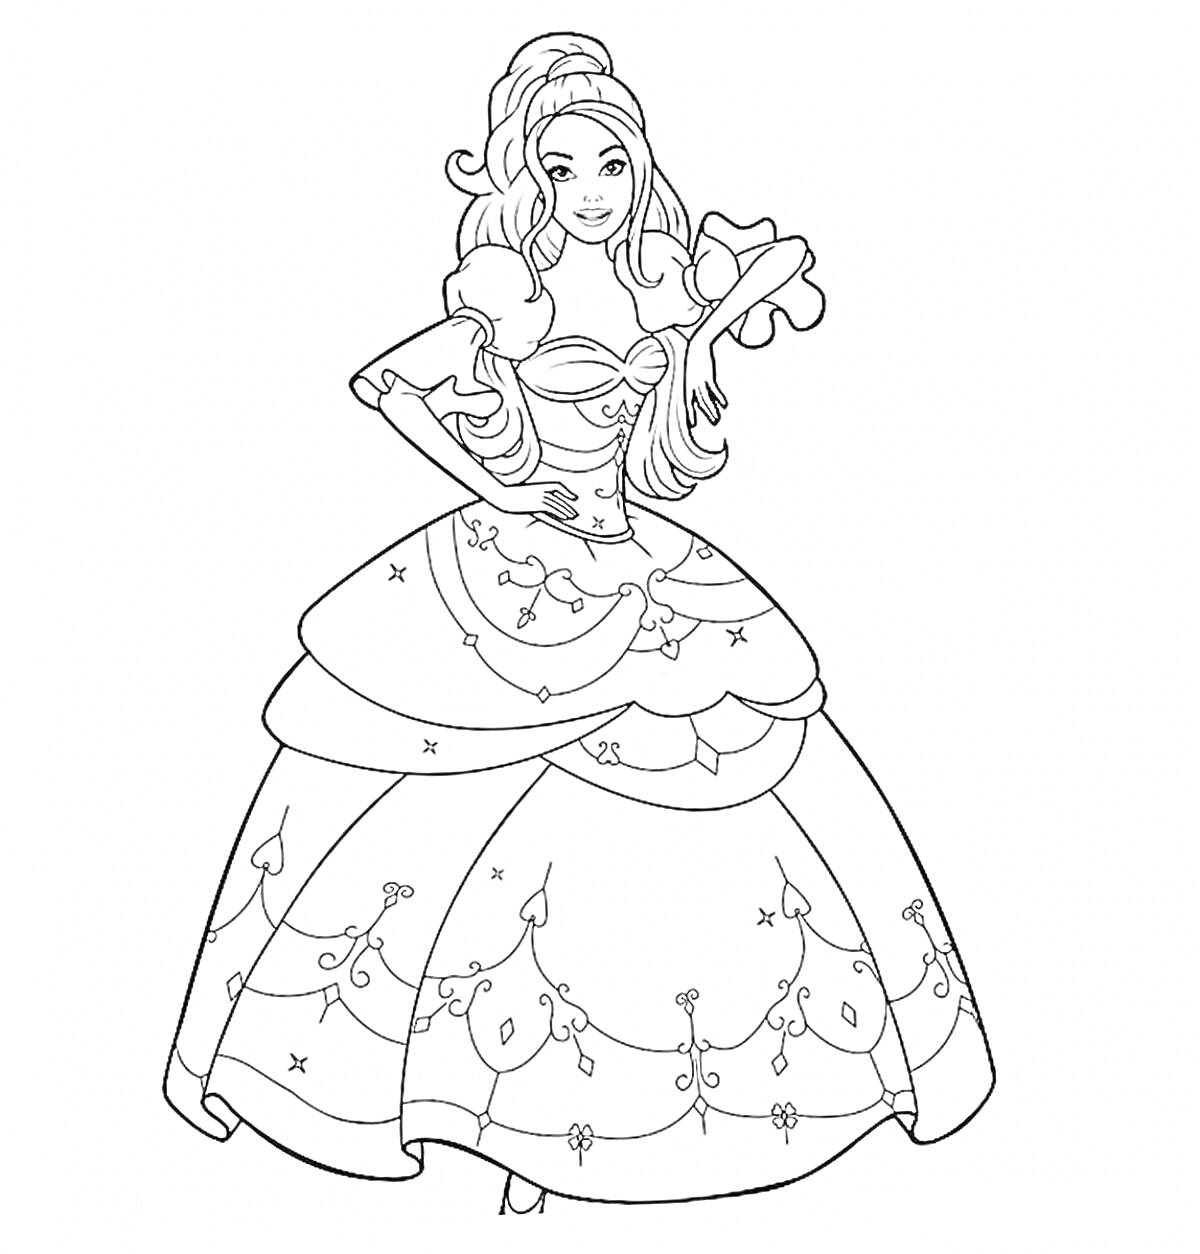 Раскраска Принцесса в пышном платье с цветочными узорами и прической